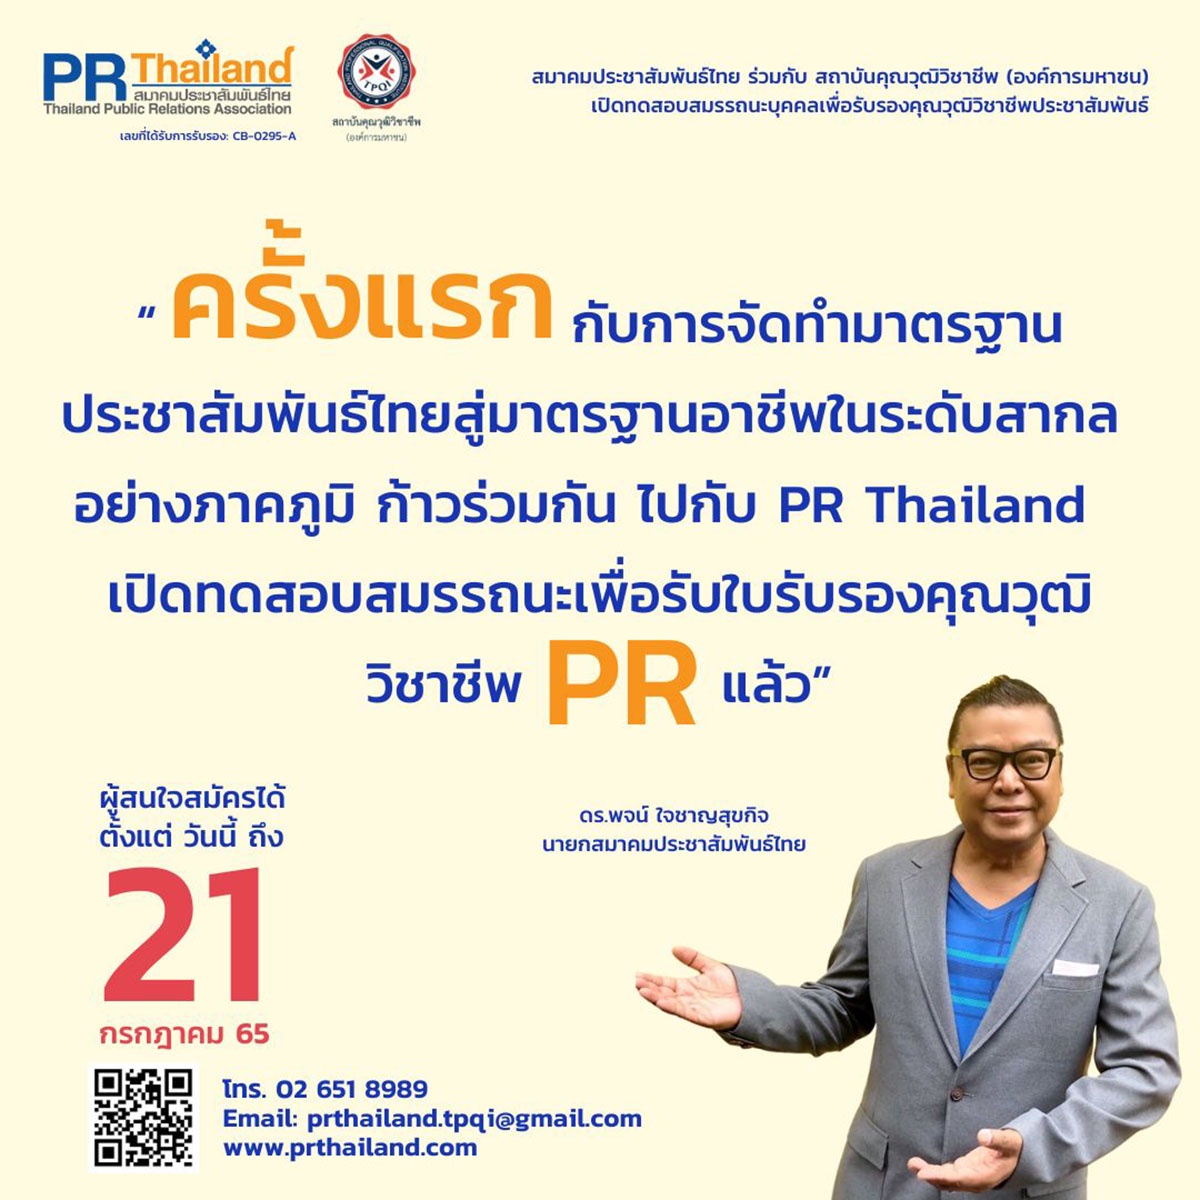 สมาคมประชาสัมพันธ์ไทย ร่วมกับ สถาบันคุณวุฒิวิชาชีพ เปิดรับการประเมินเพื่อรับรองสมรรถนะ ตามมาตรฐานคุณวุฒิอาชีพประชาสัมพันธ์ ครั้งที่ 2 / 2565 ถึง 21 กรกฏาคม